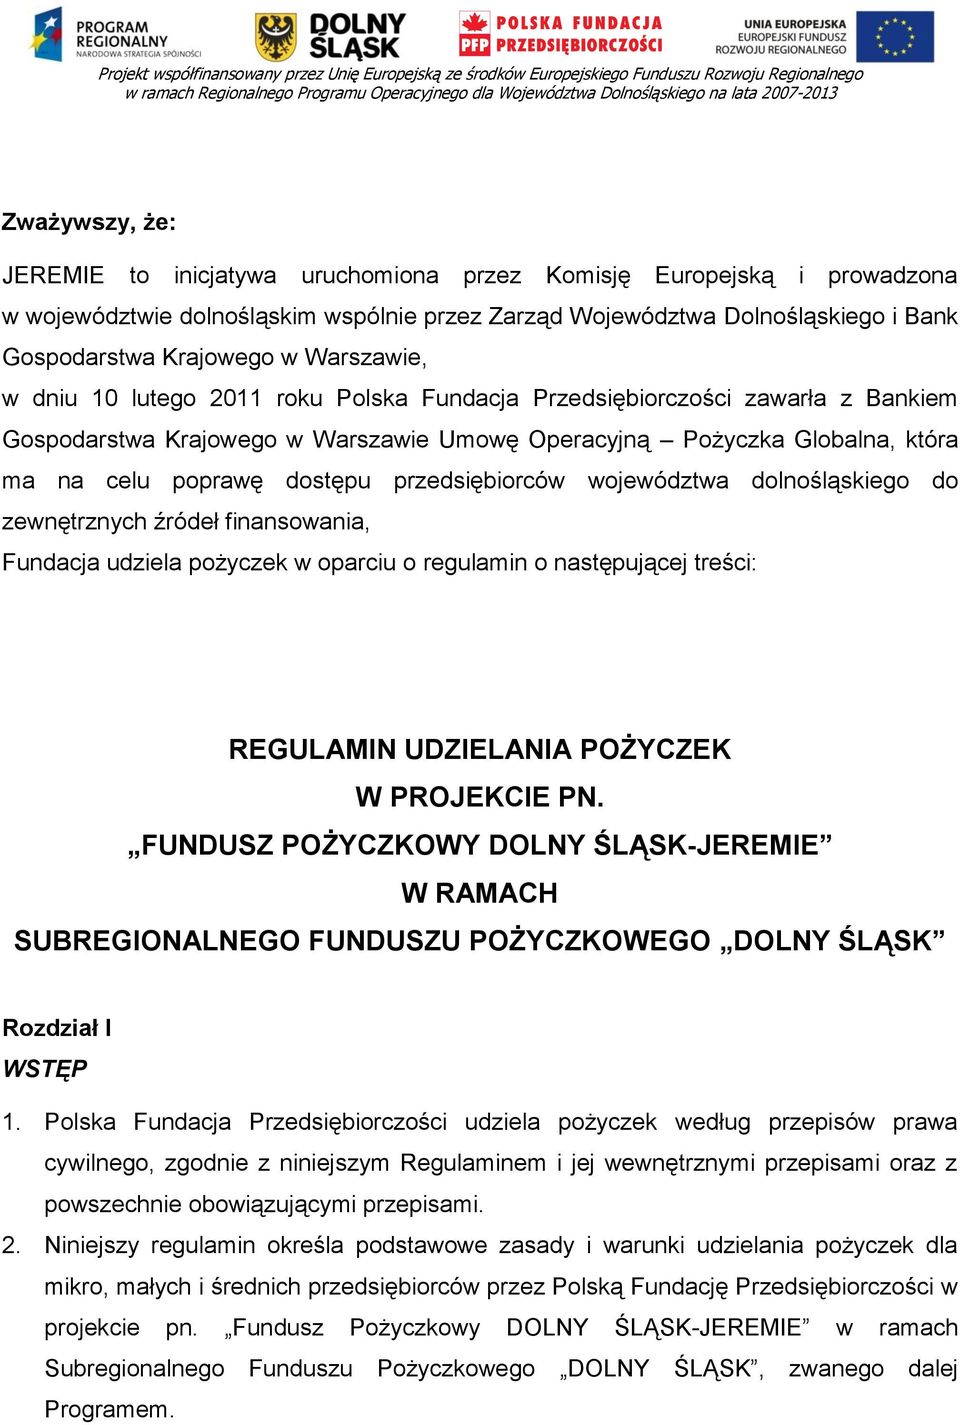 Warszawie, w dniu 10 lutego 2011 roku Polska Fundacja Przedsiębiorczości zawarła z Bankiem Gospodarstwa Krajowego w Warszawie Umowę Operacyjną Pożyczka Globalna, która ma na celu poprawę dostępu